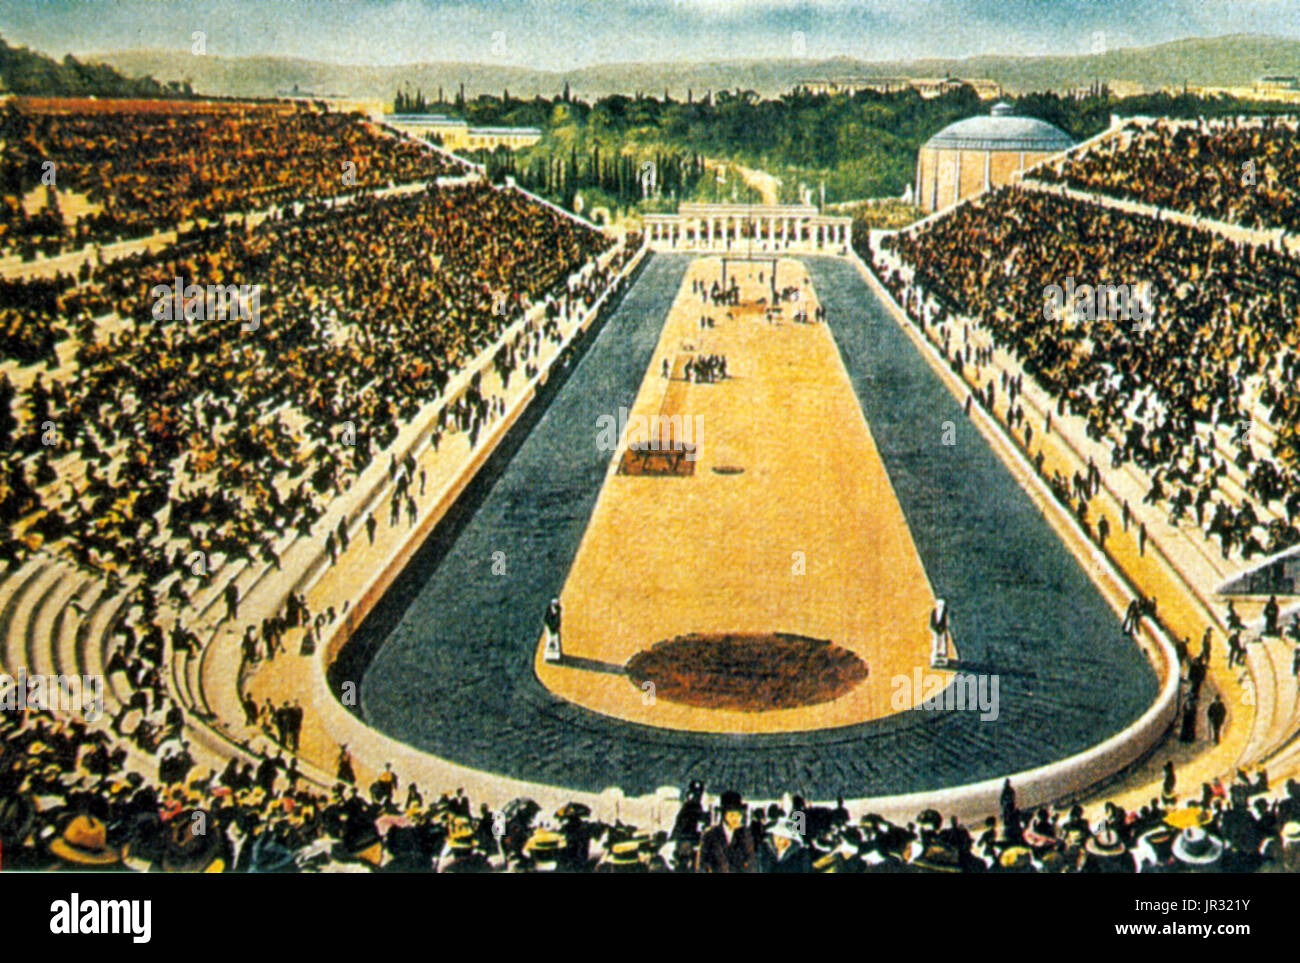 Estadio Panathenaic,Juegos Olímpicos,1906 Foto de stock